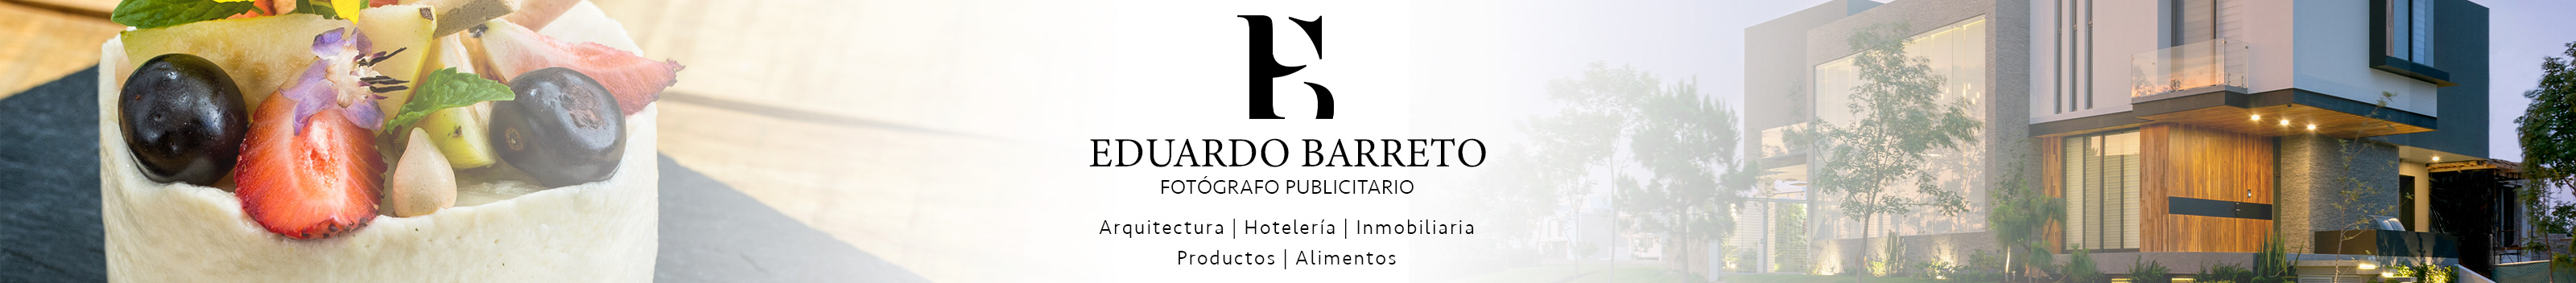 Eduardo Barreto's profile banner